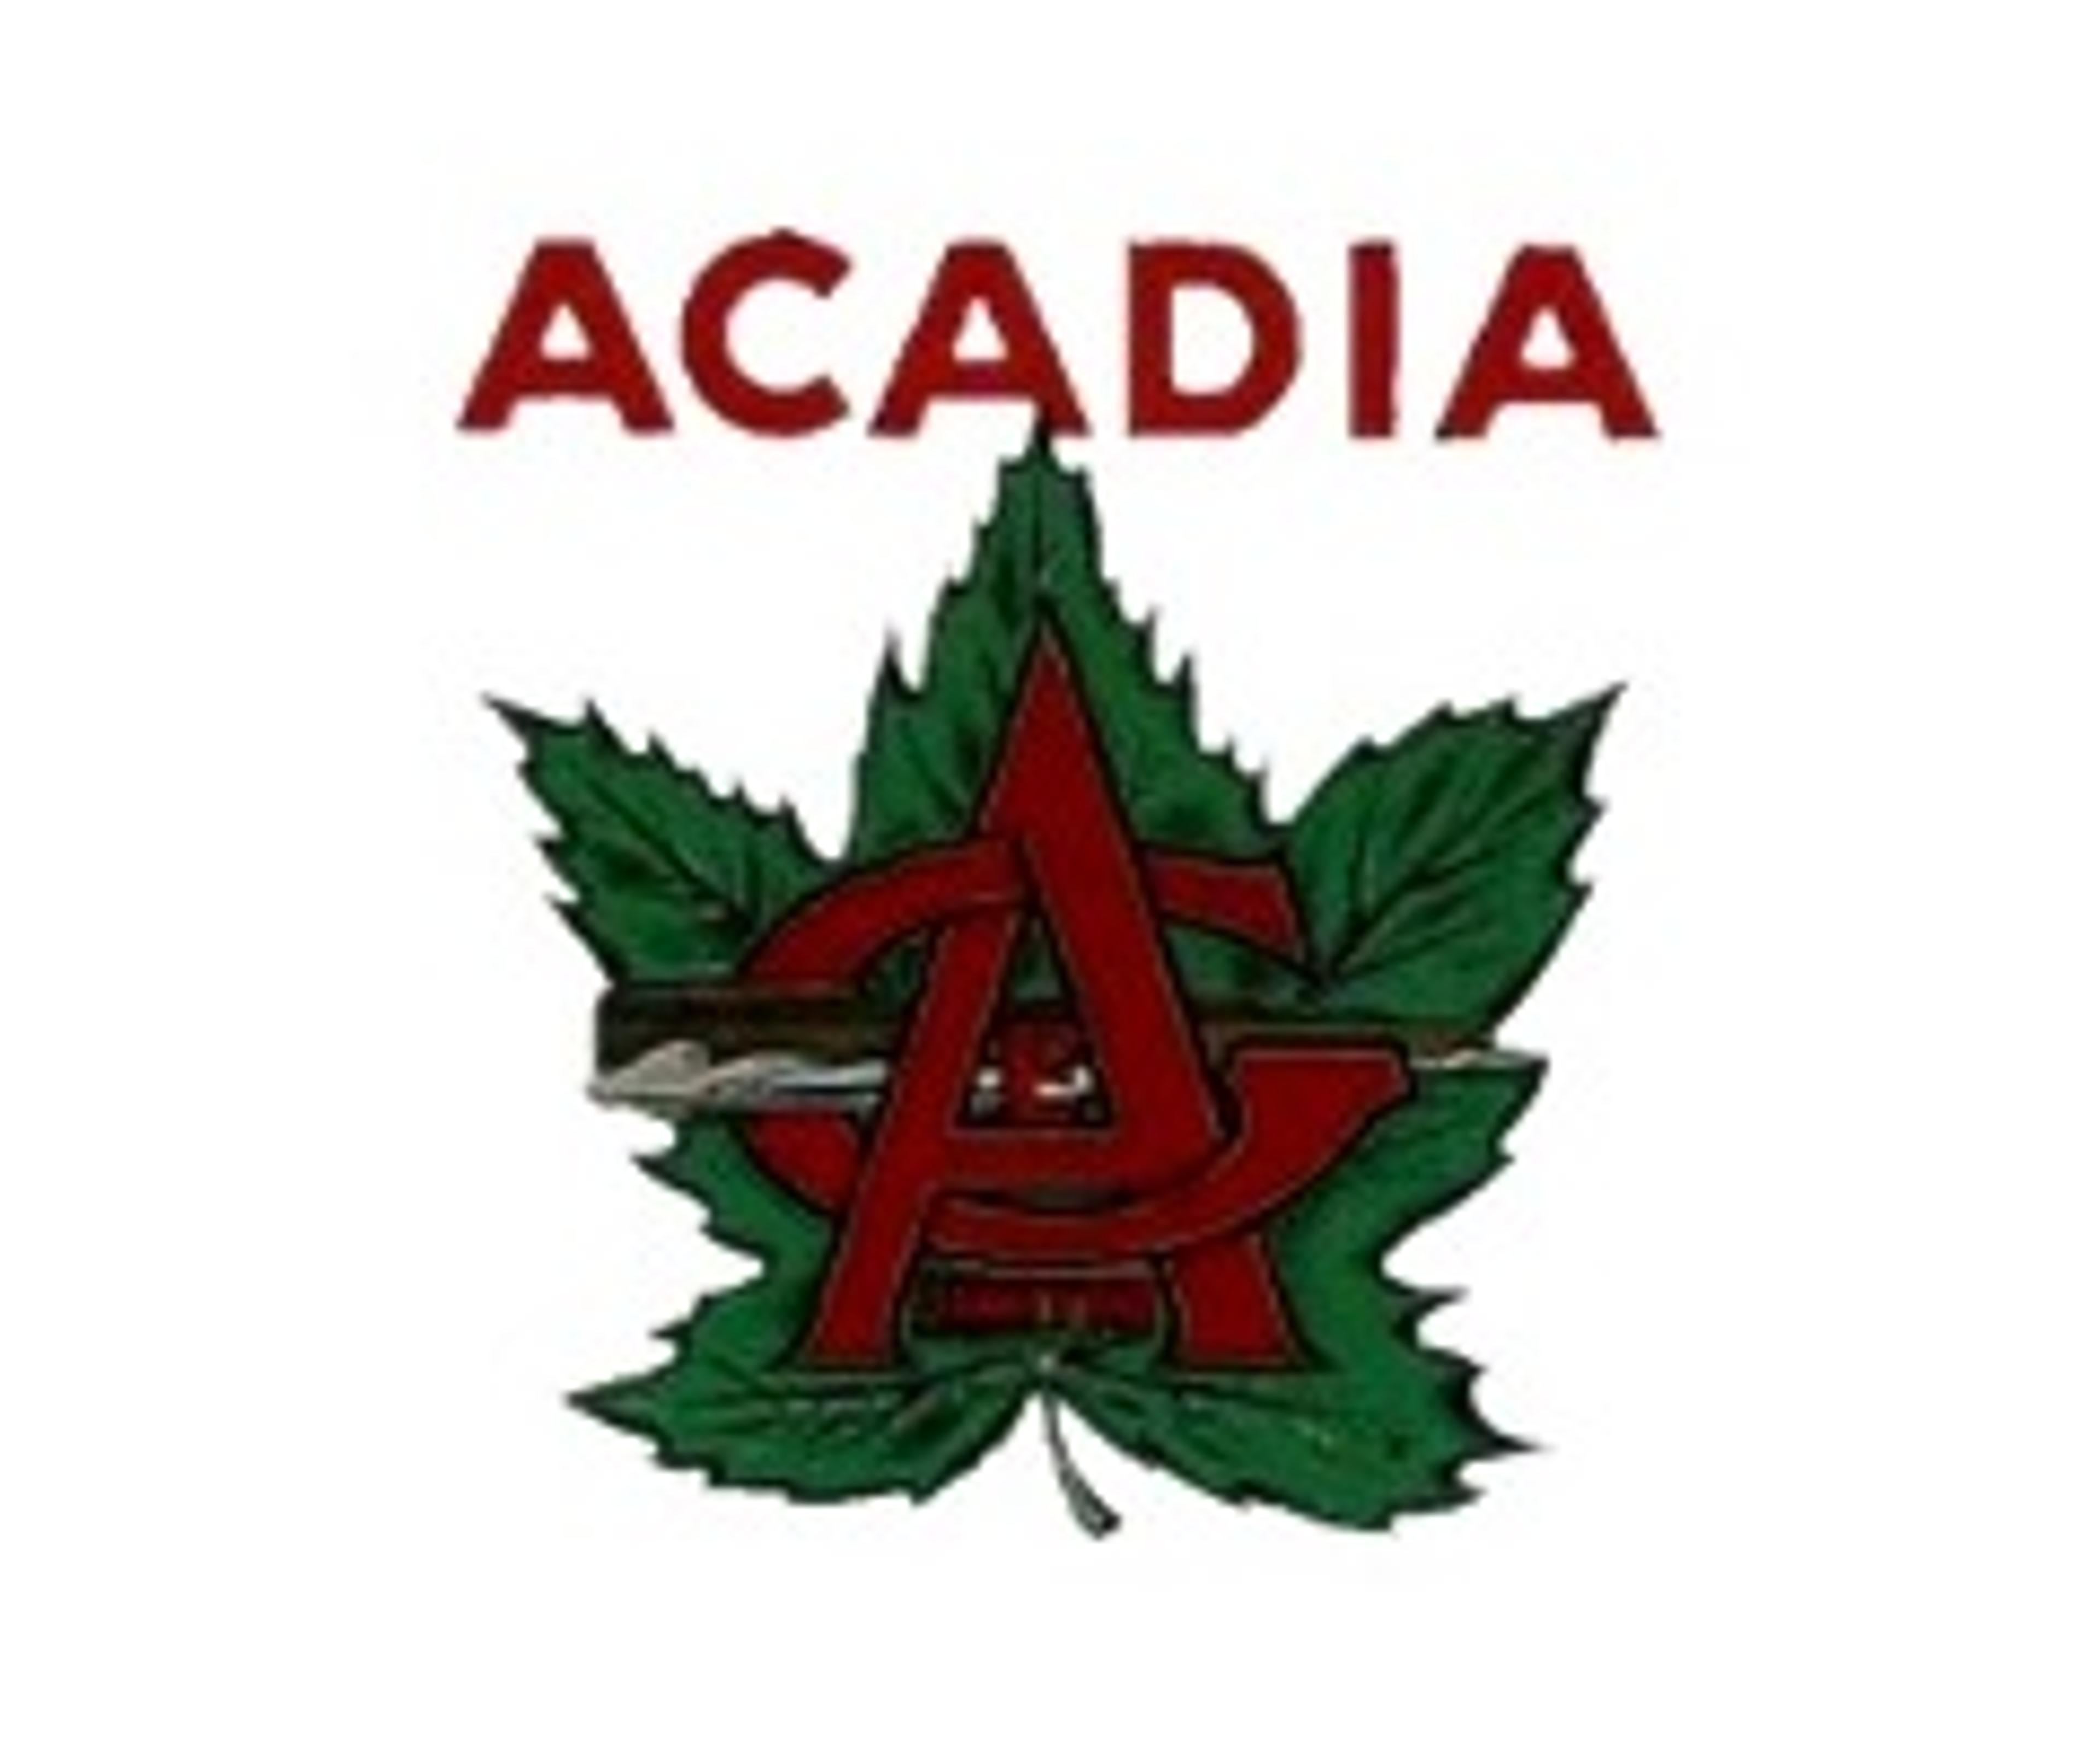 Köp dina båtmotordelar till Acadia hos oss!